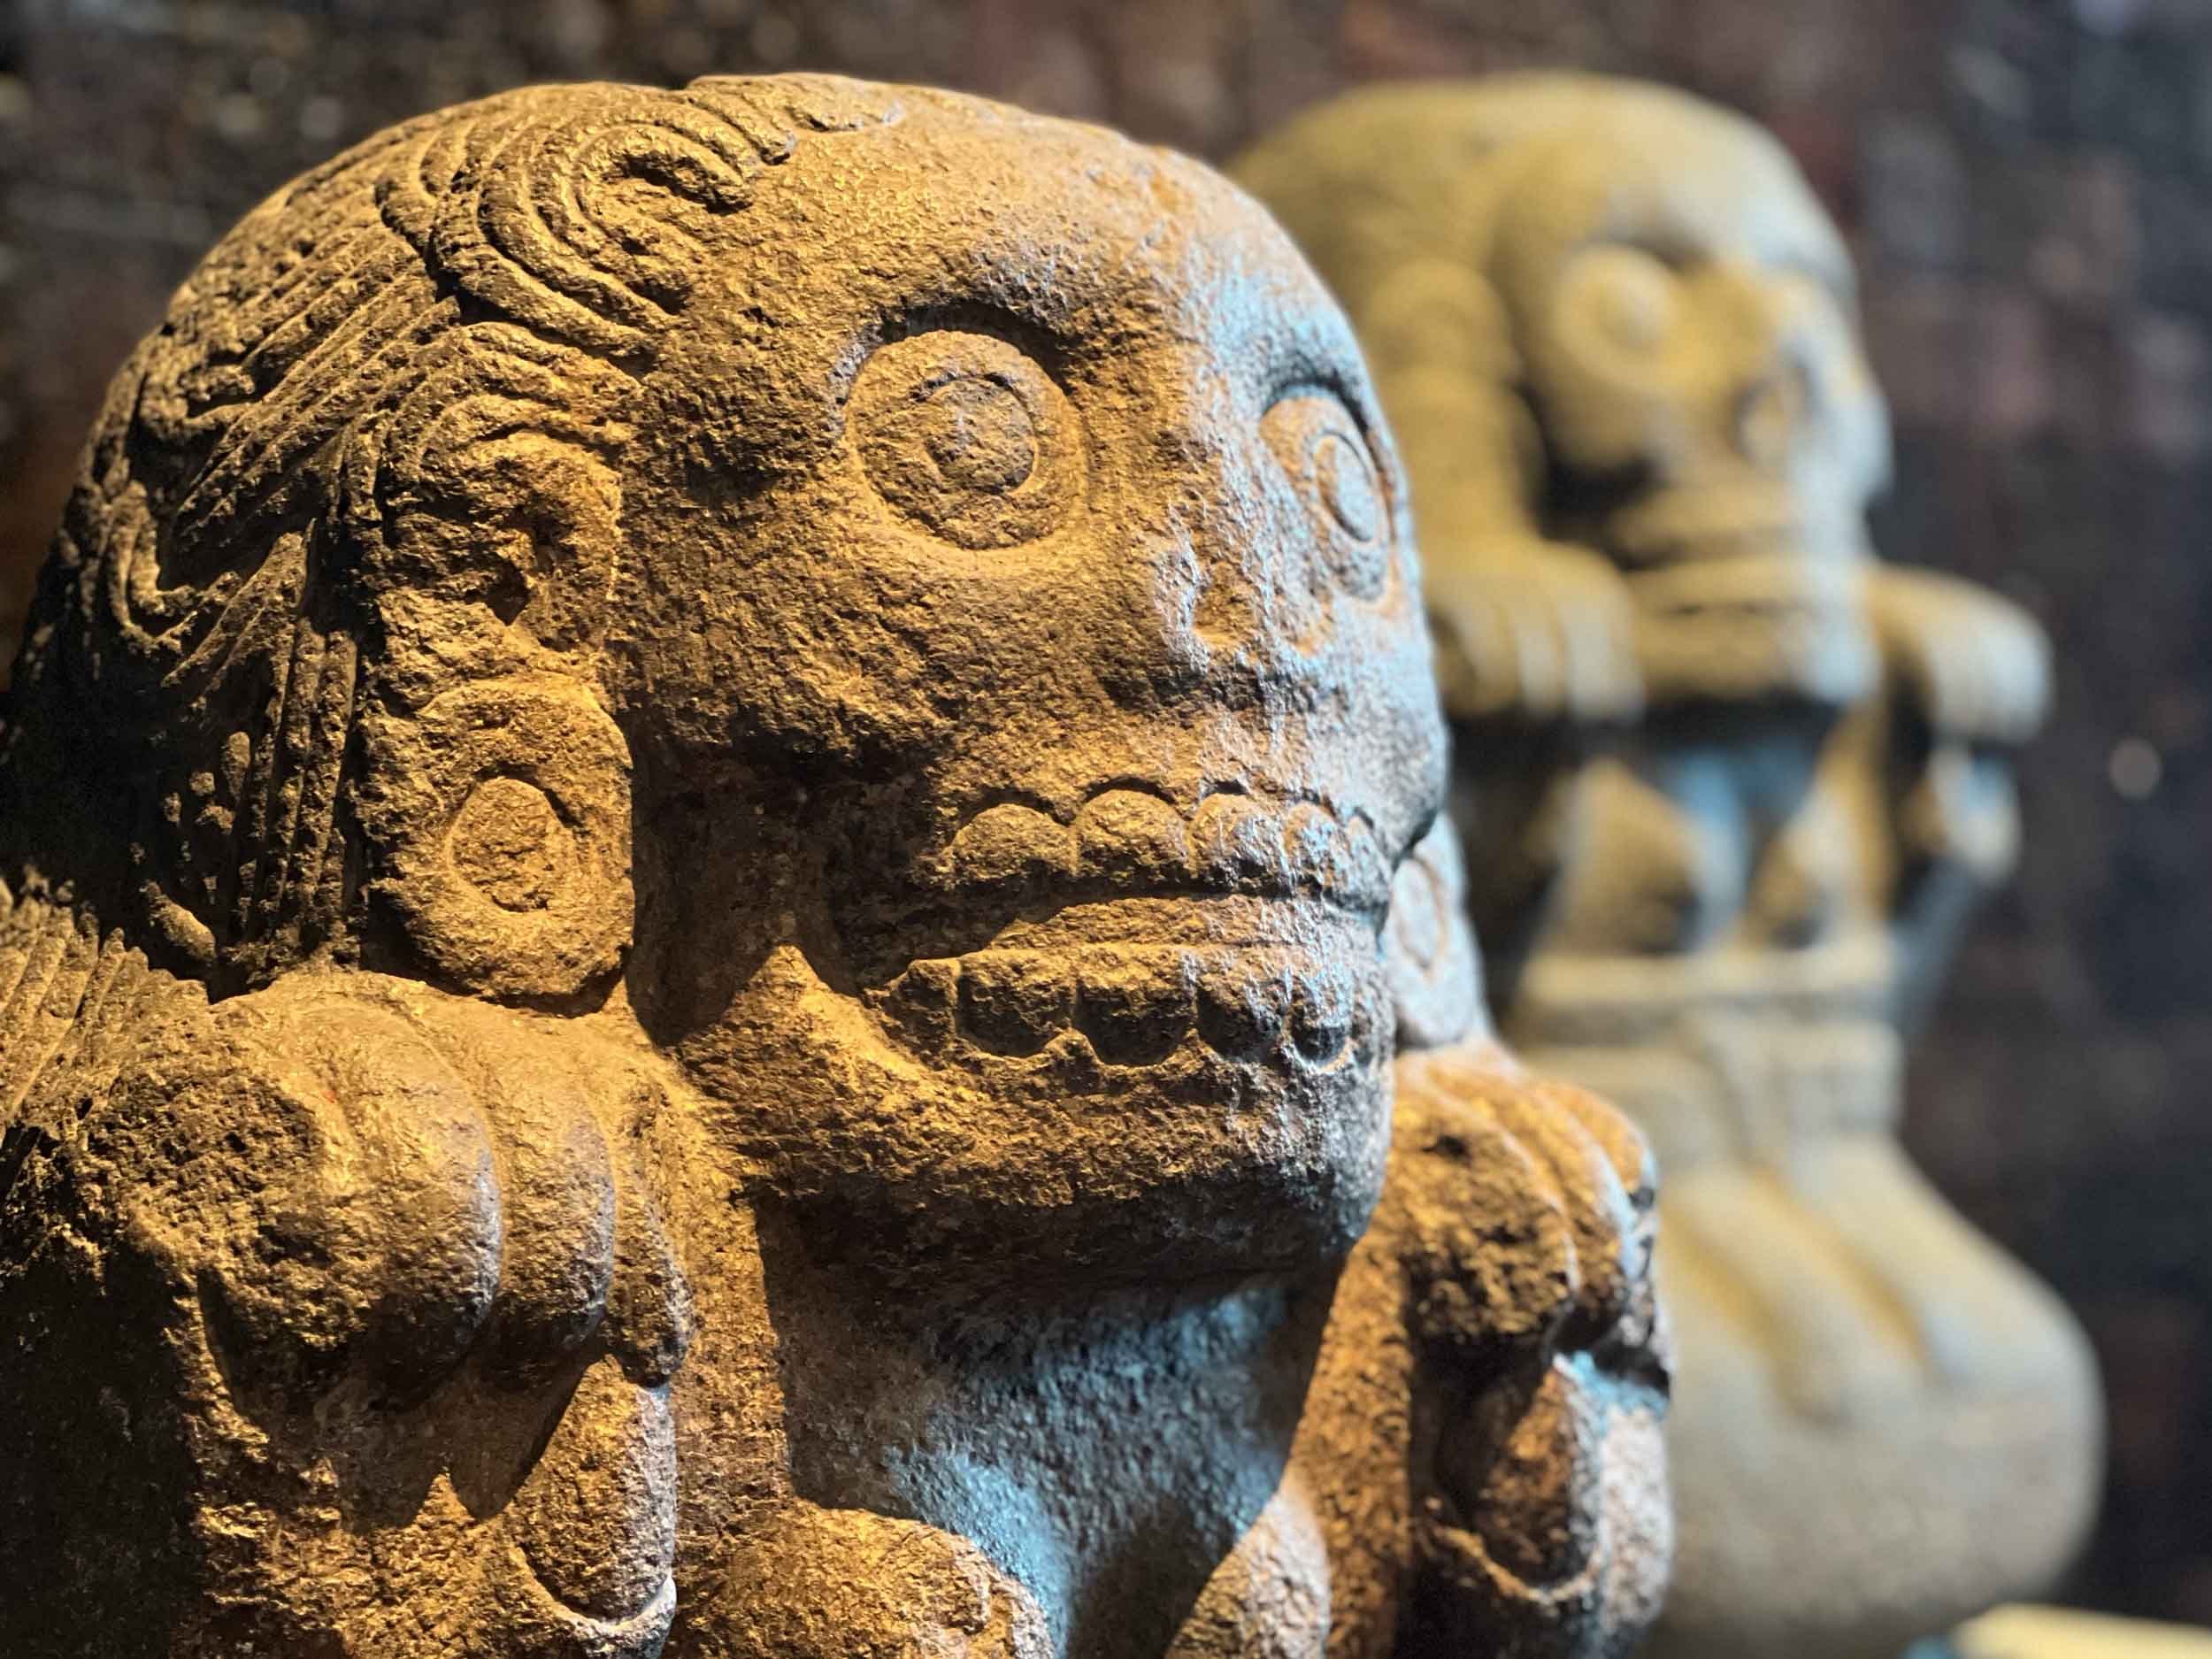 A visit to the Museo Nacional de Antropología, Mexico City